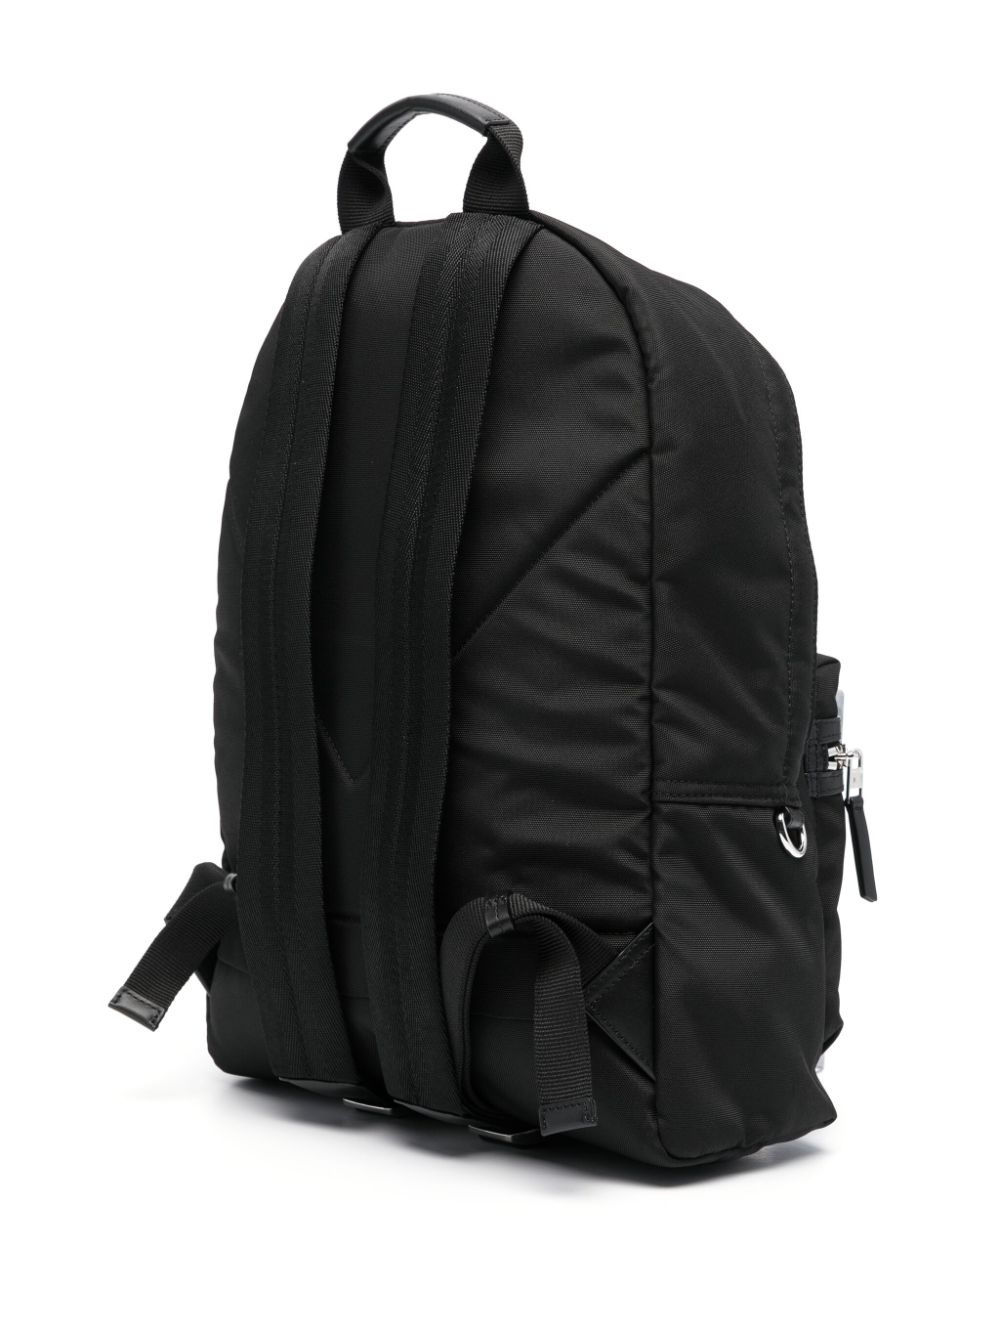 Tiger-motif backpack - 3